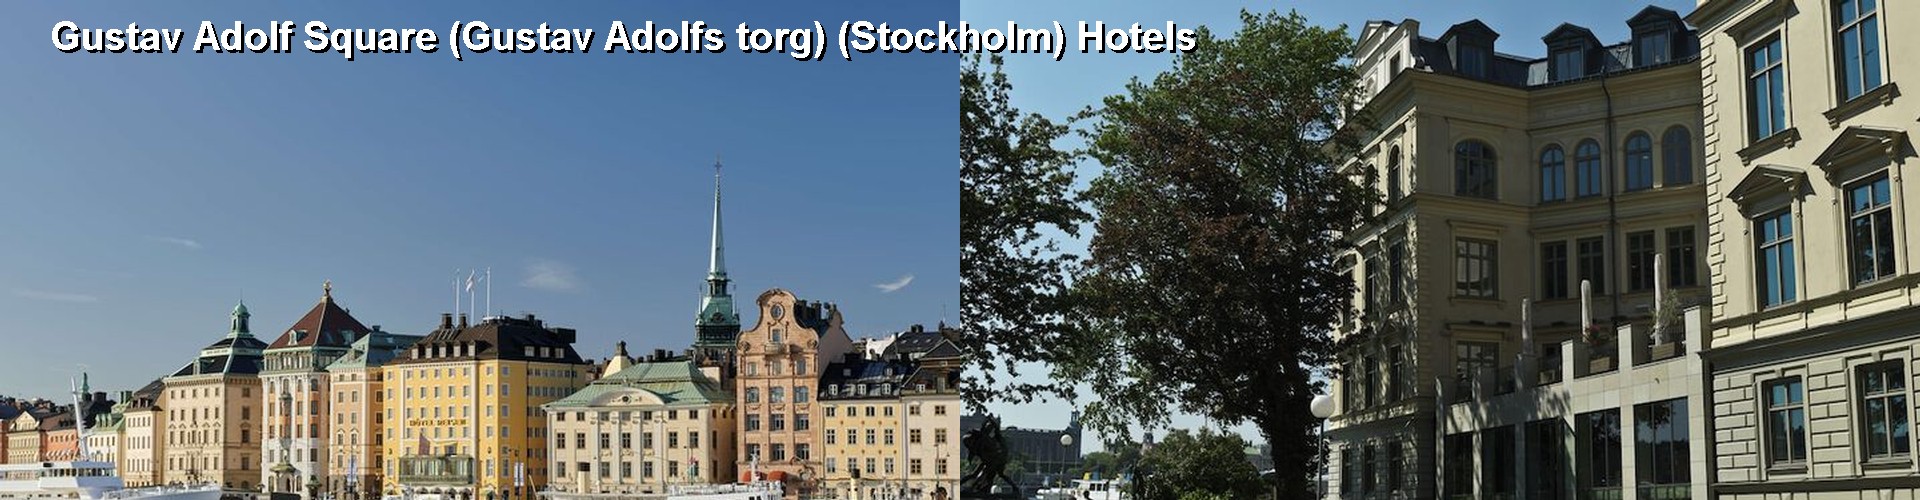 5 Best Hotels near Gustav Adolf Square (Gustav Adolfs torg) (Stockholm)